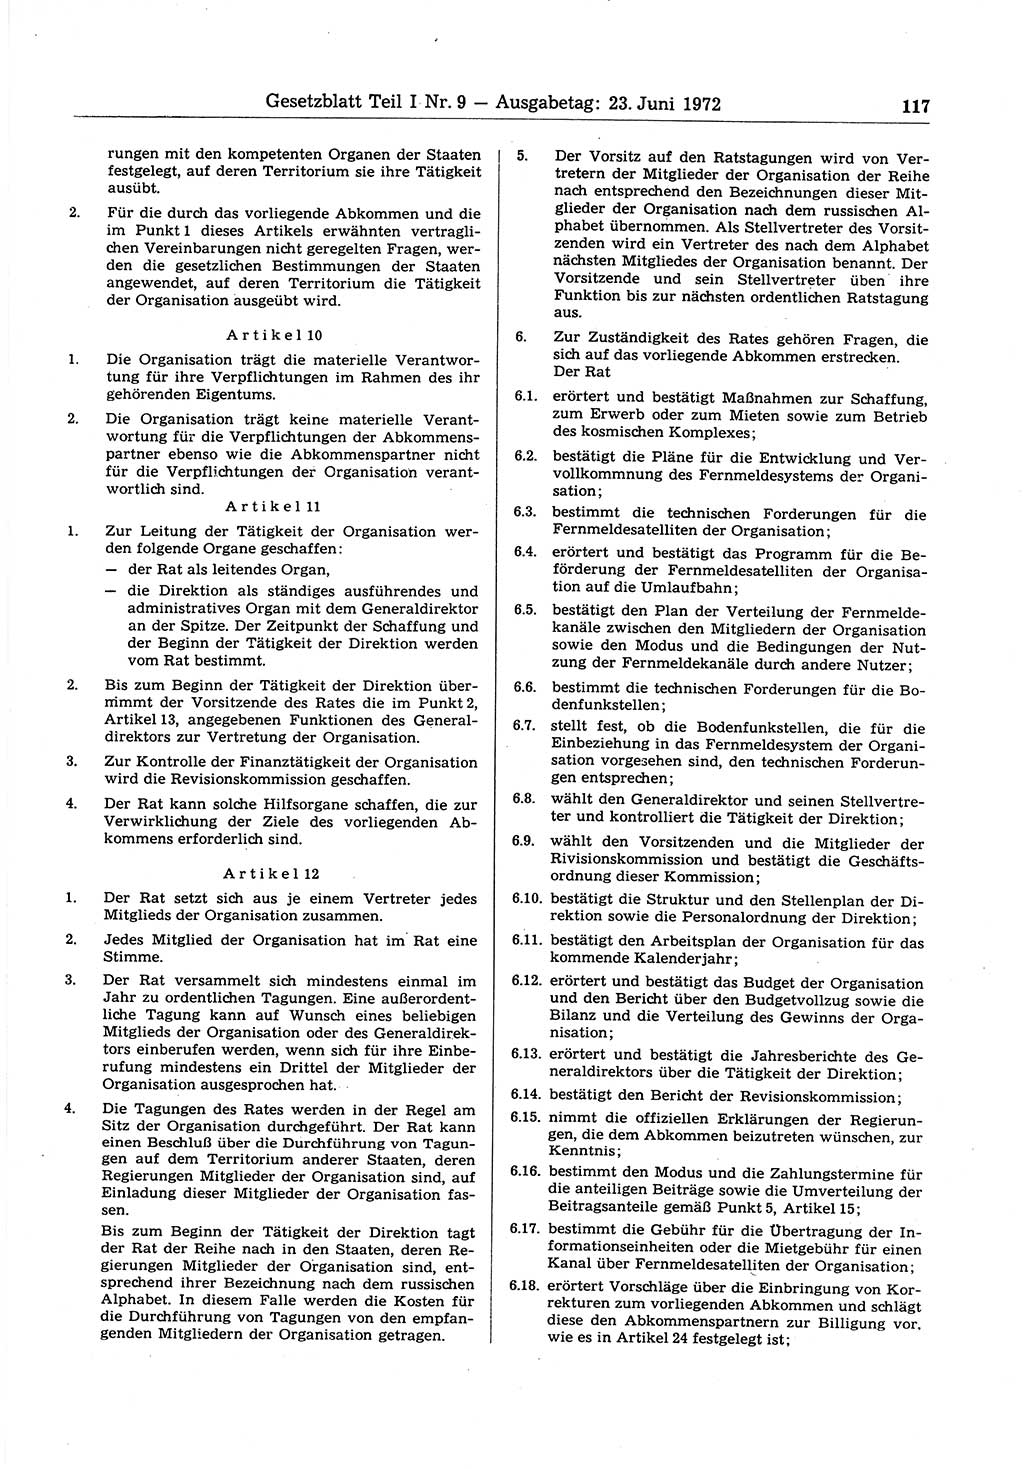 Gesetzblatt (GBl.) der Deutschen Demokratischen Republik (DDR) Teil Ⅰ 1972, Seite 117 (GBl. DDR Ⅰ 1972, S. 117)